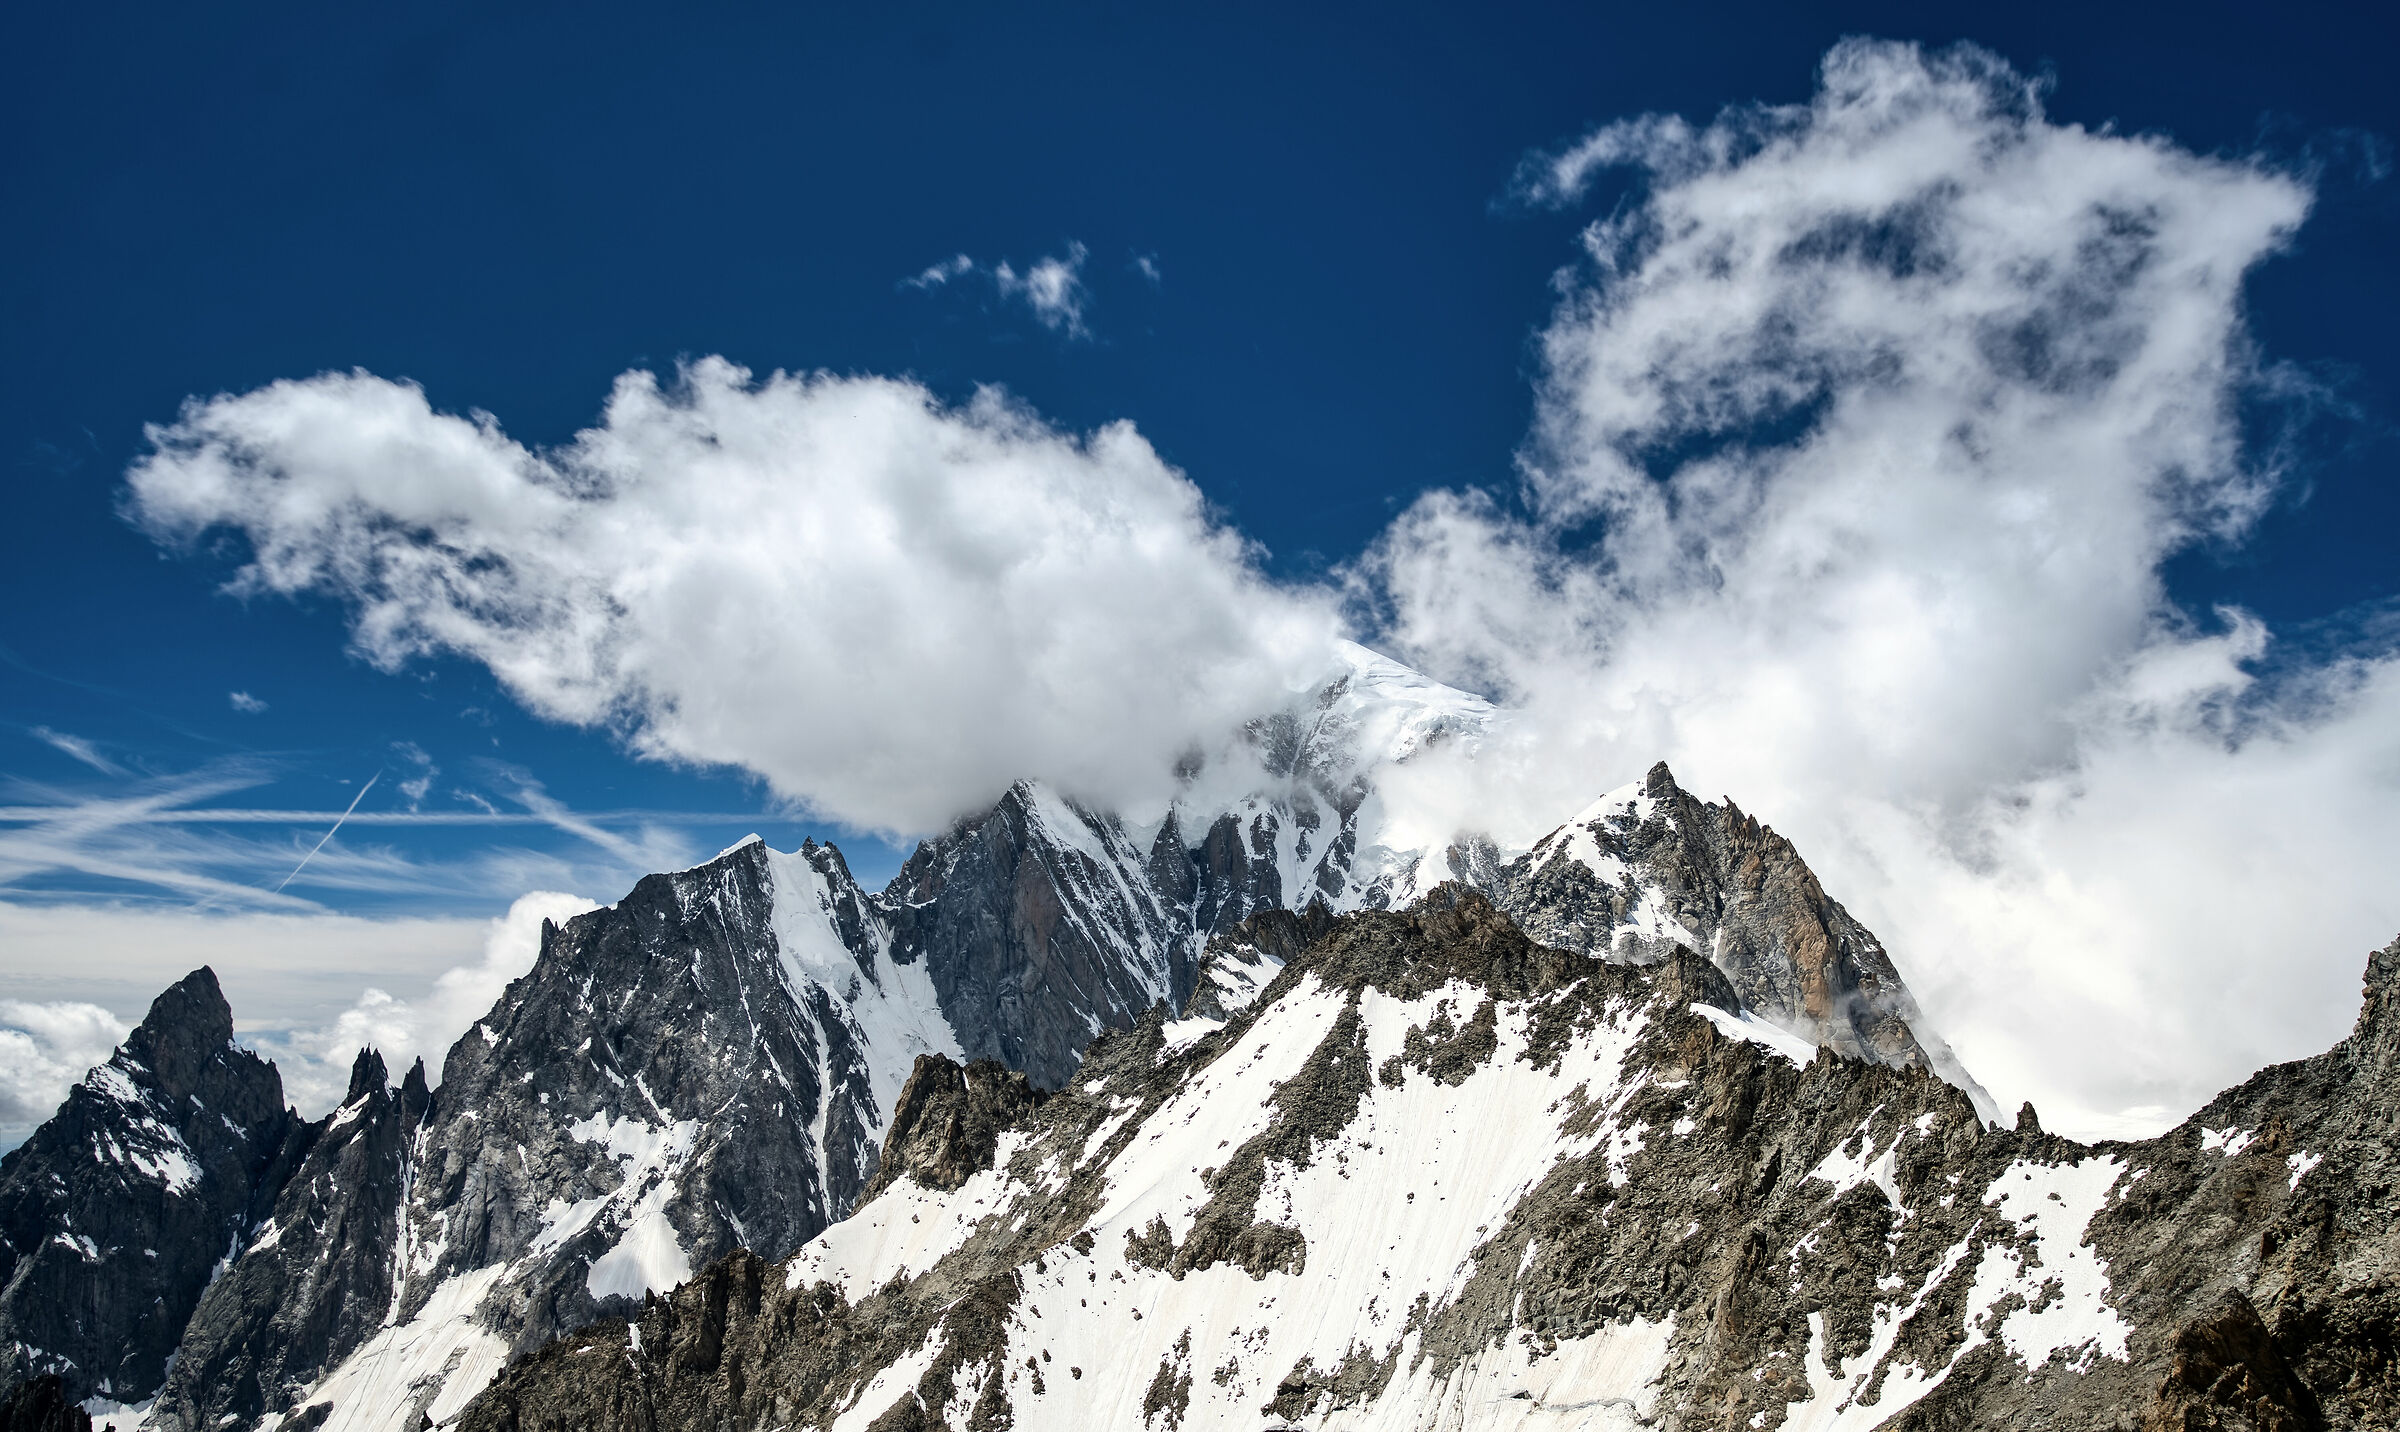 Mont Blanc summit 4810 mslm...